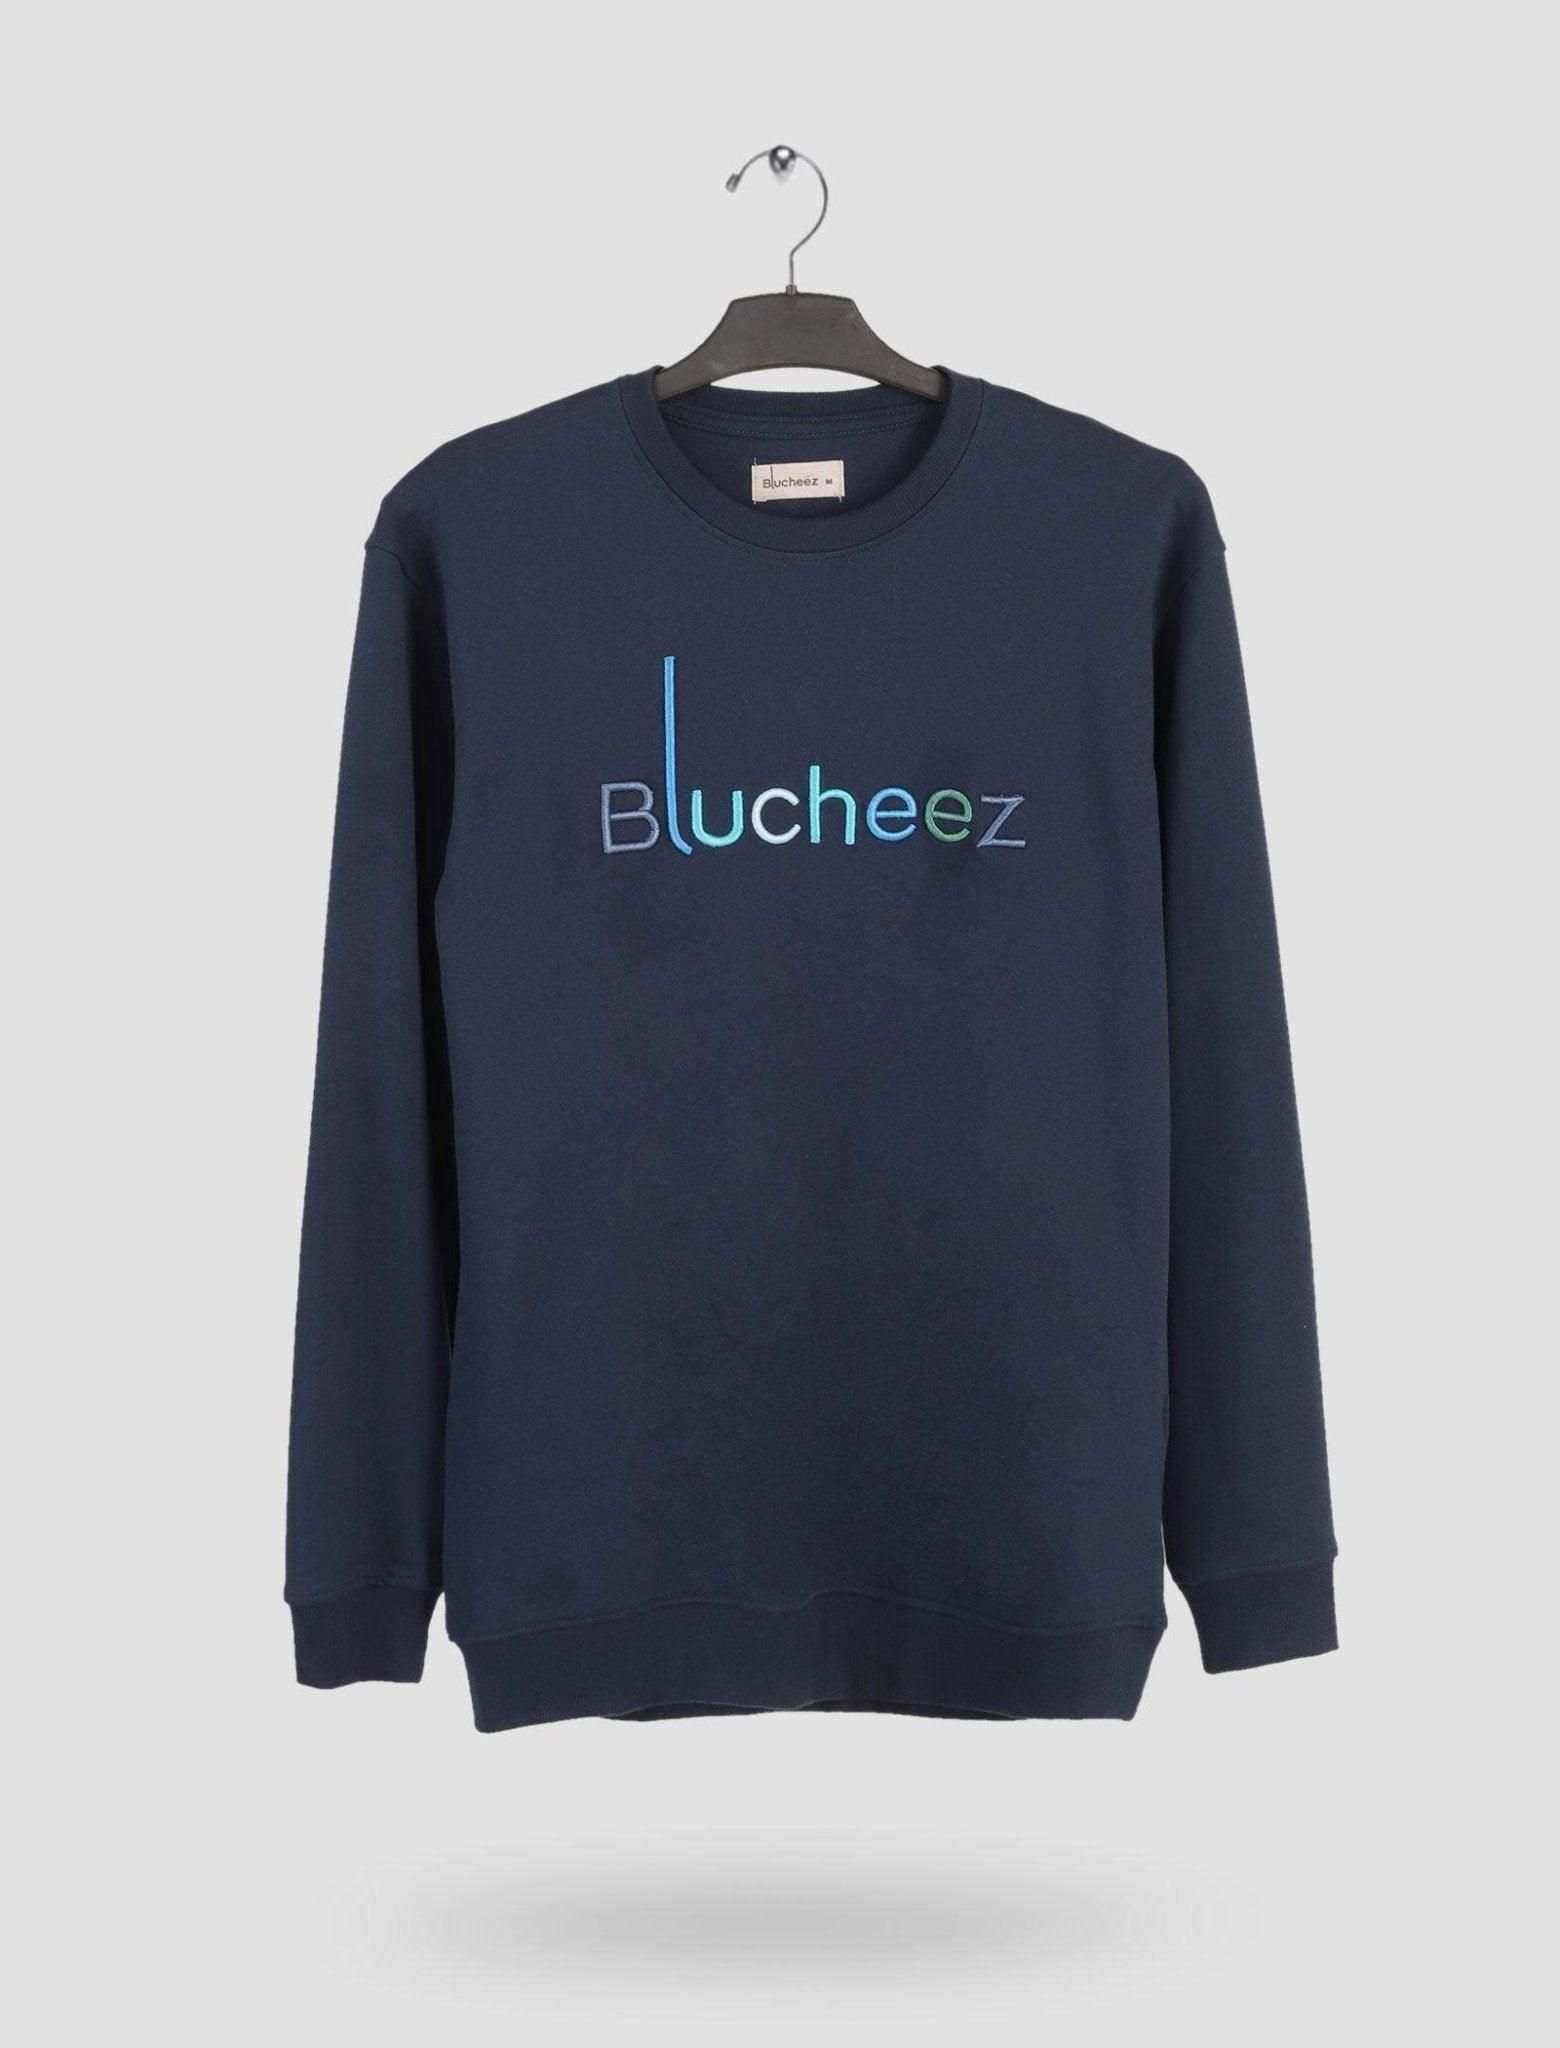 Blucheez Embroidered Sweatshirt - Blucheez